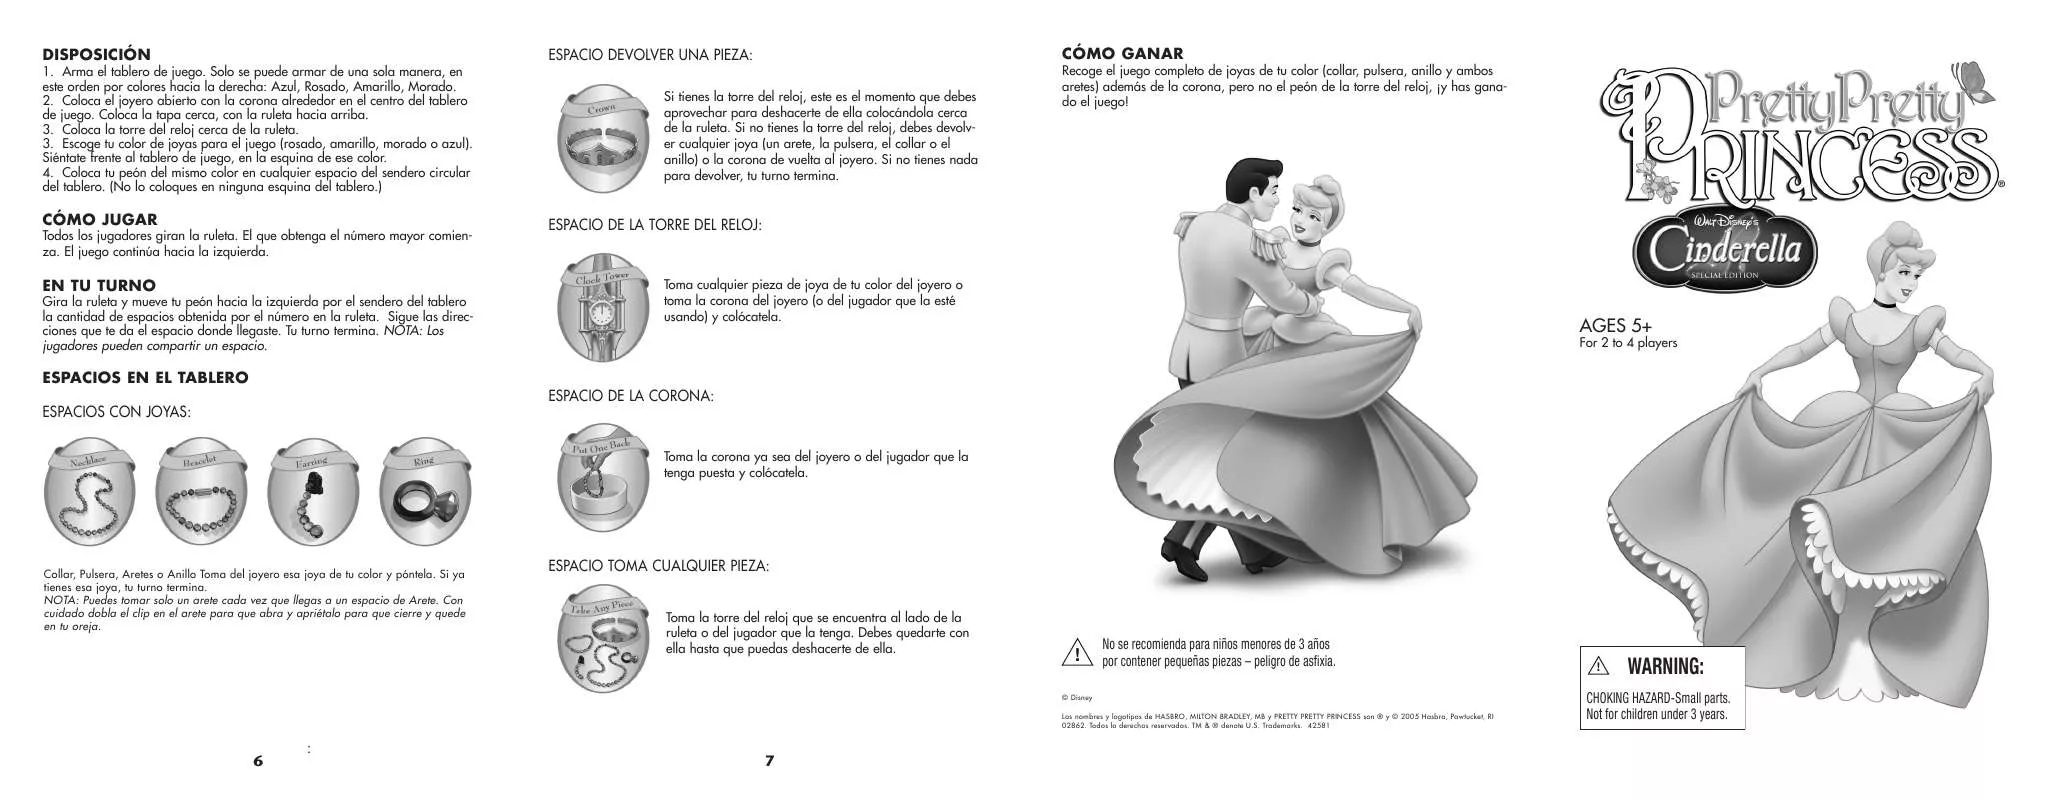 Mode d'emploi HASBRO PRETTY PRETTY PRINCESS CINDERELLA EDITION SPANISH